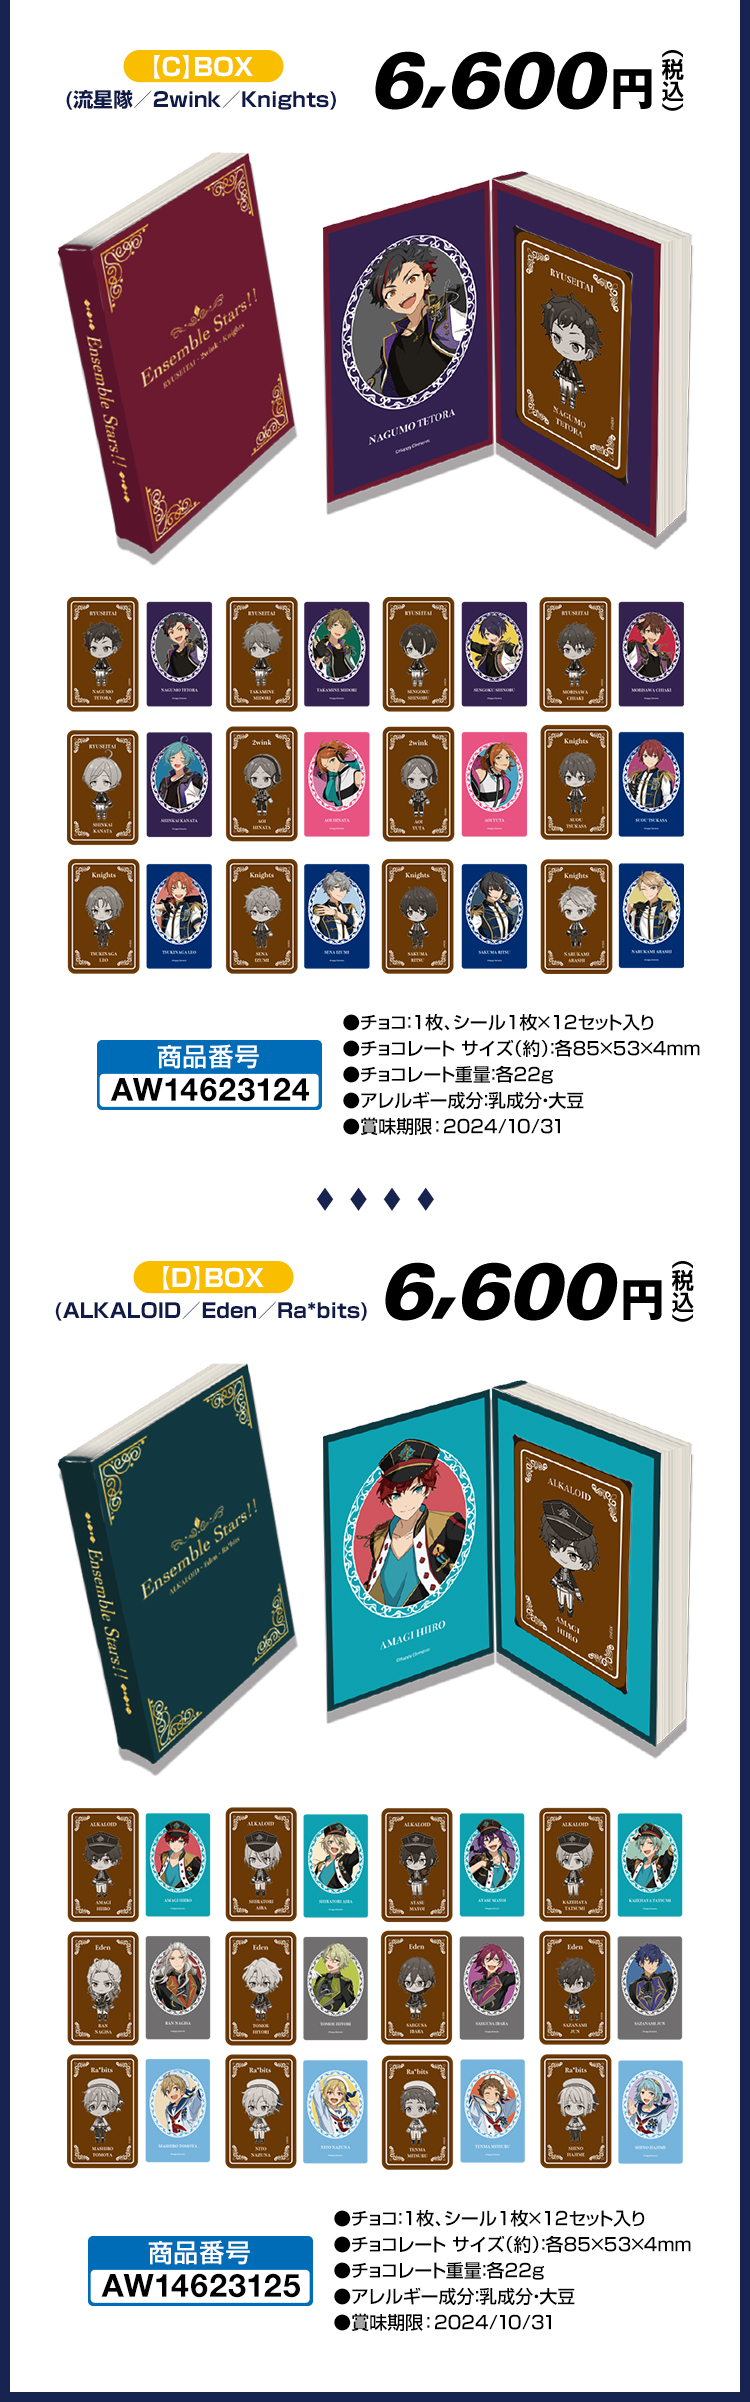 【C】BOX(流星隊／2wink／Knights) 6,600円(税込) 【D】BOX(ALKALOID／Eden／Ra*bits) 6,600円(税込)